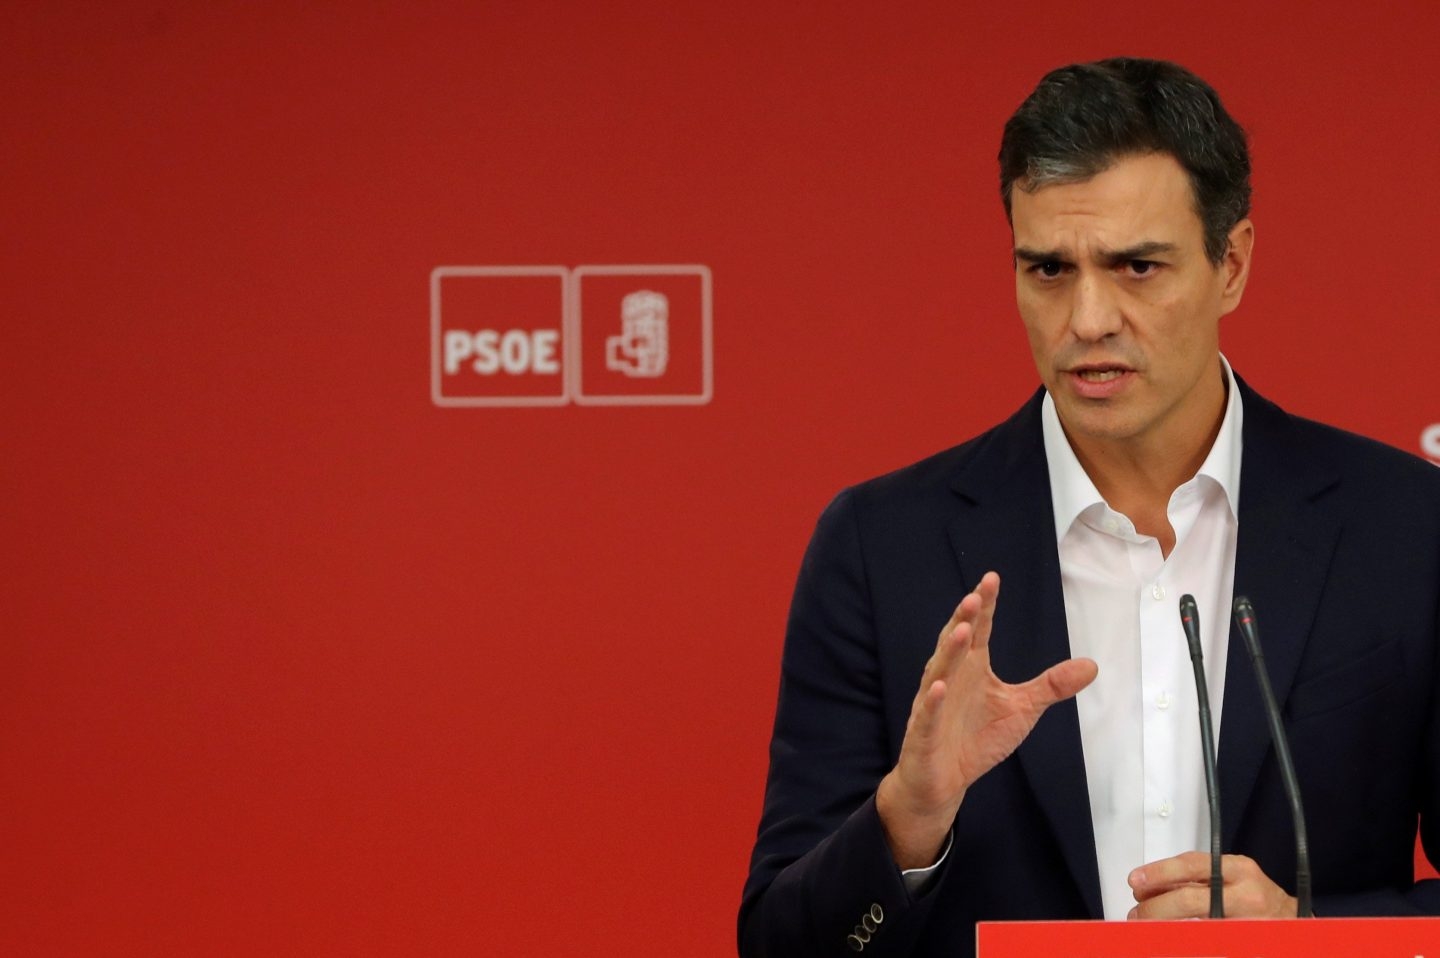 Pedro Sánchez: "Rajoy pactará conmigo las medidas del 155"